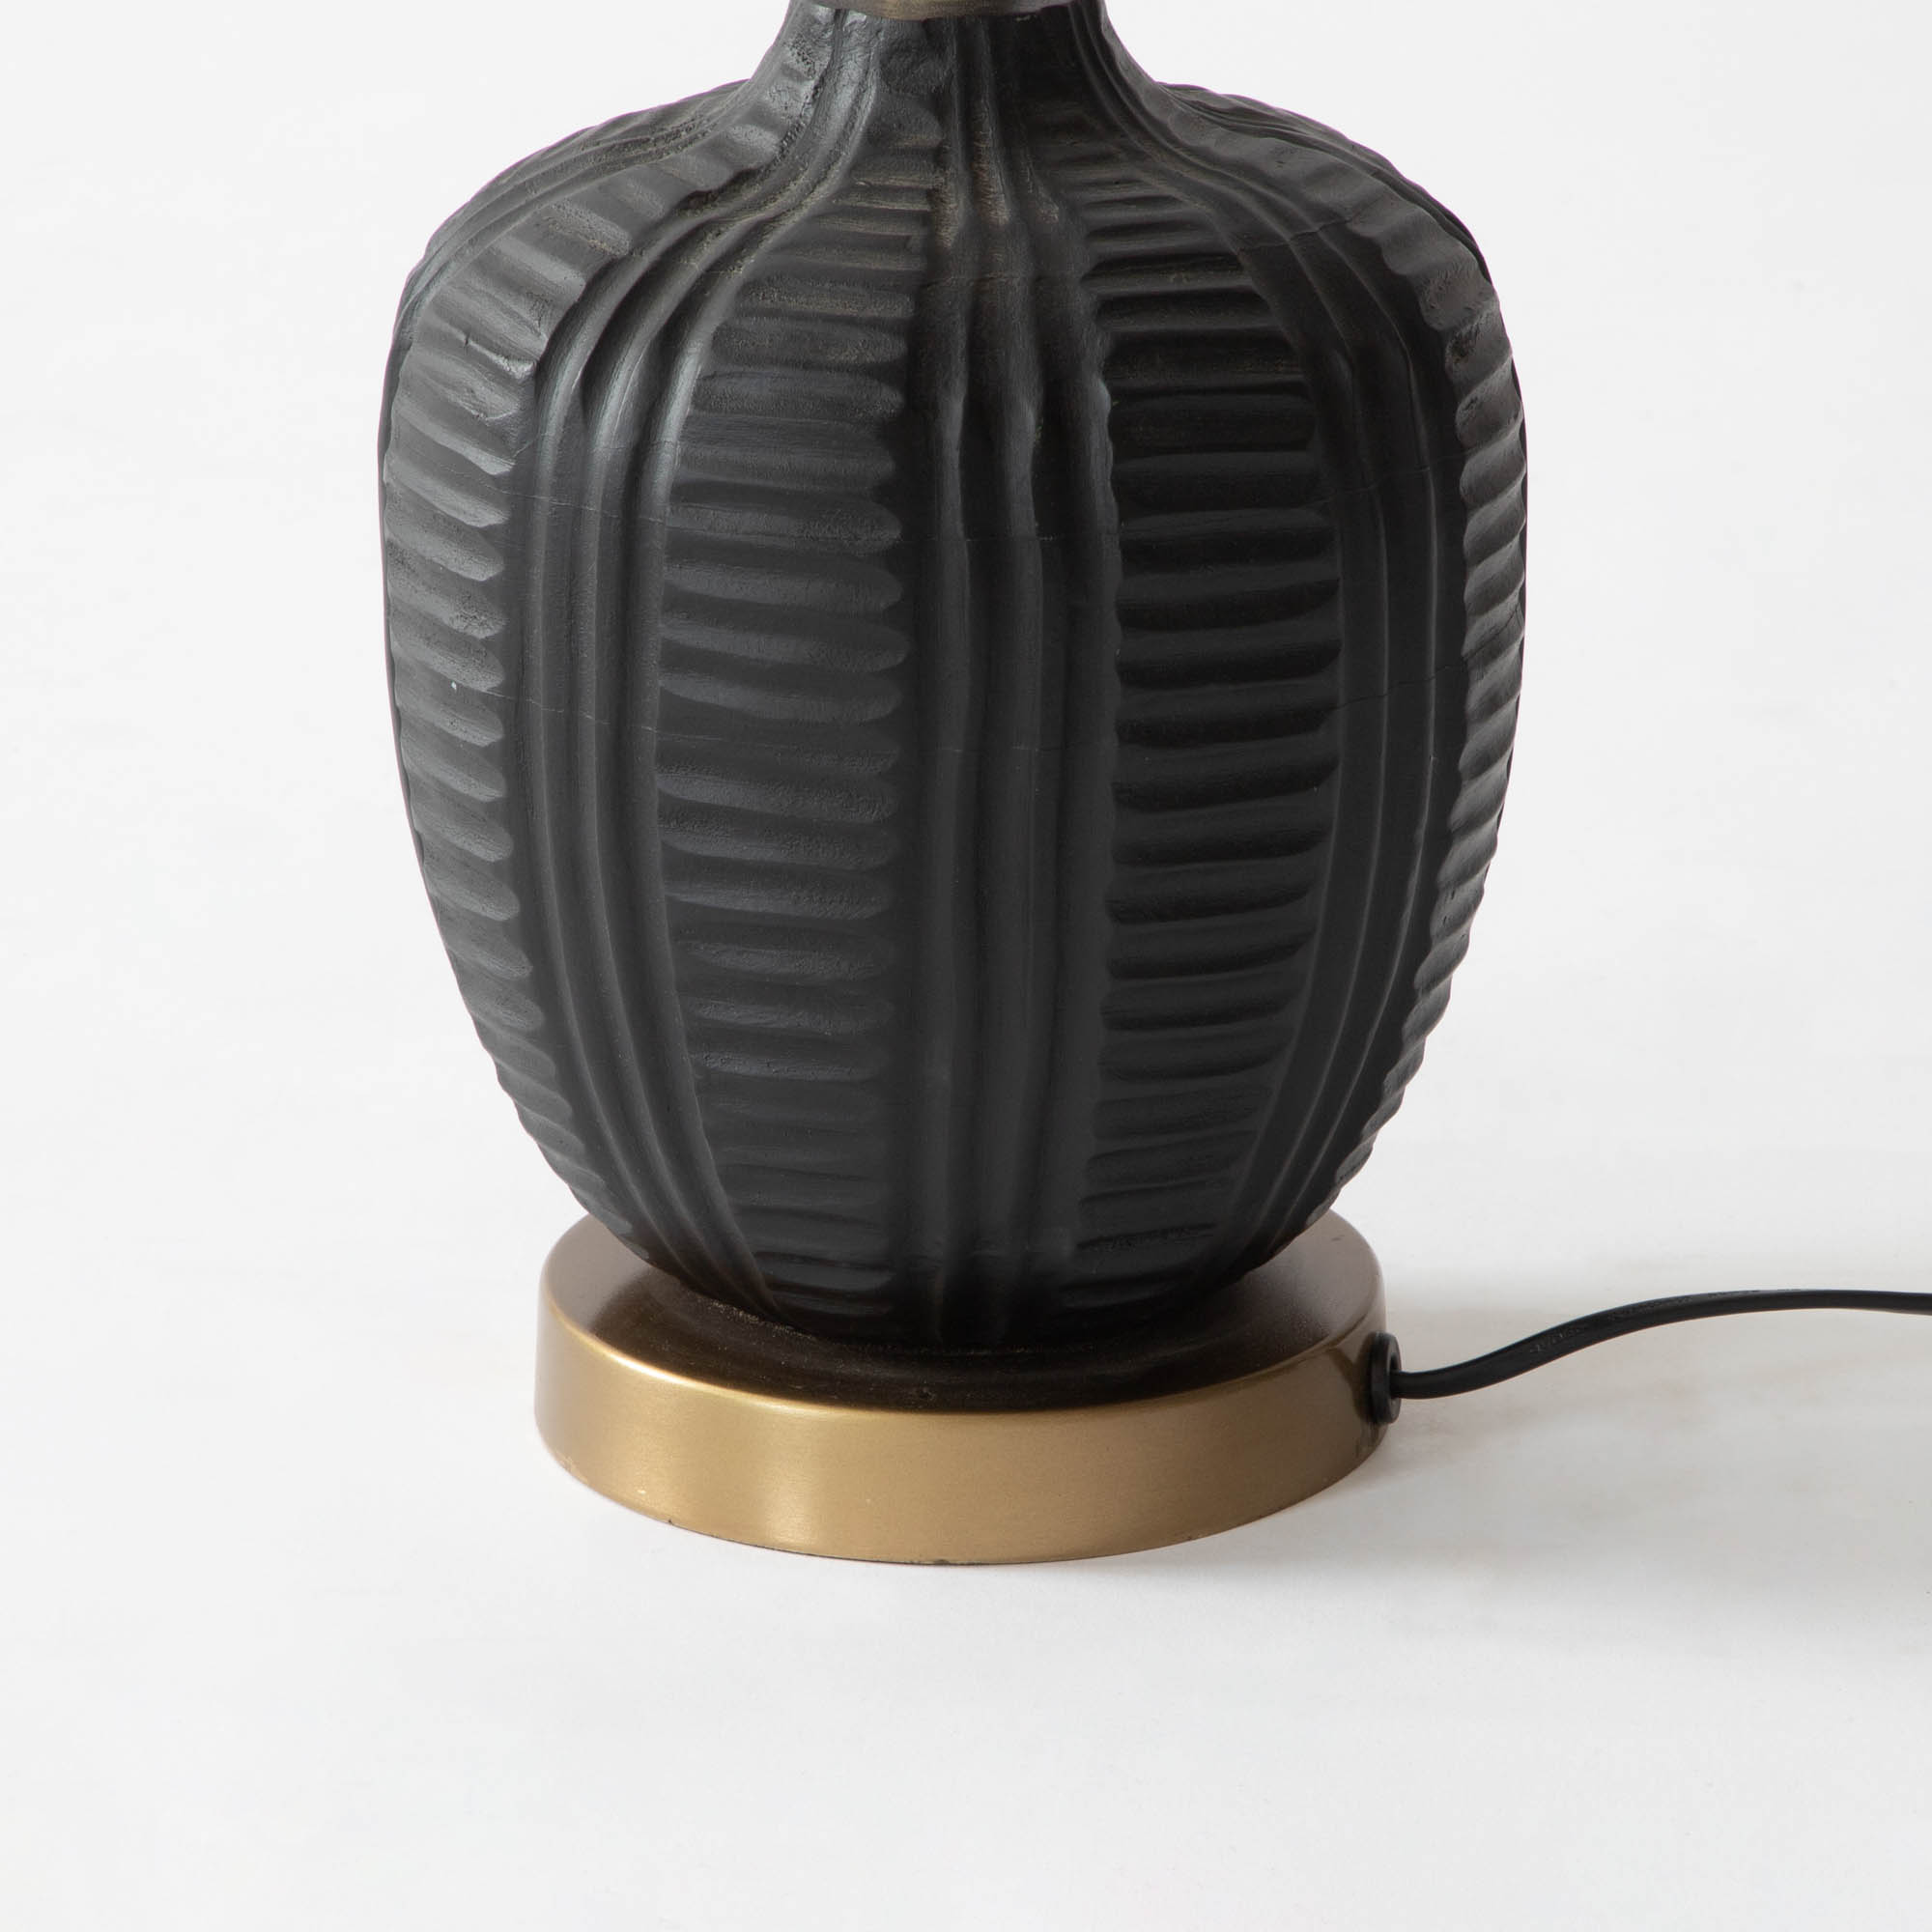 Tuscany Wooden Table Lamp - Ebony